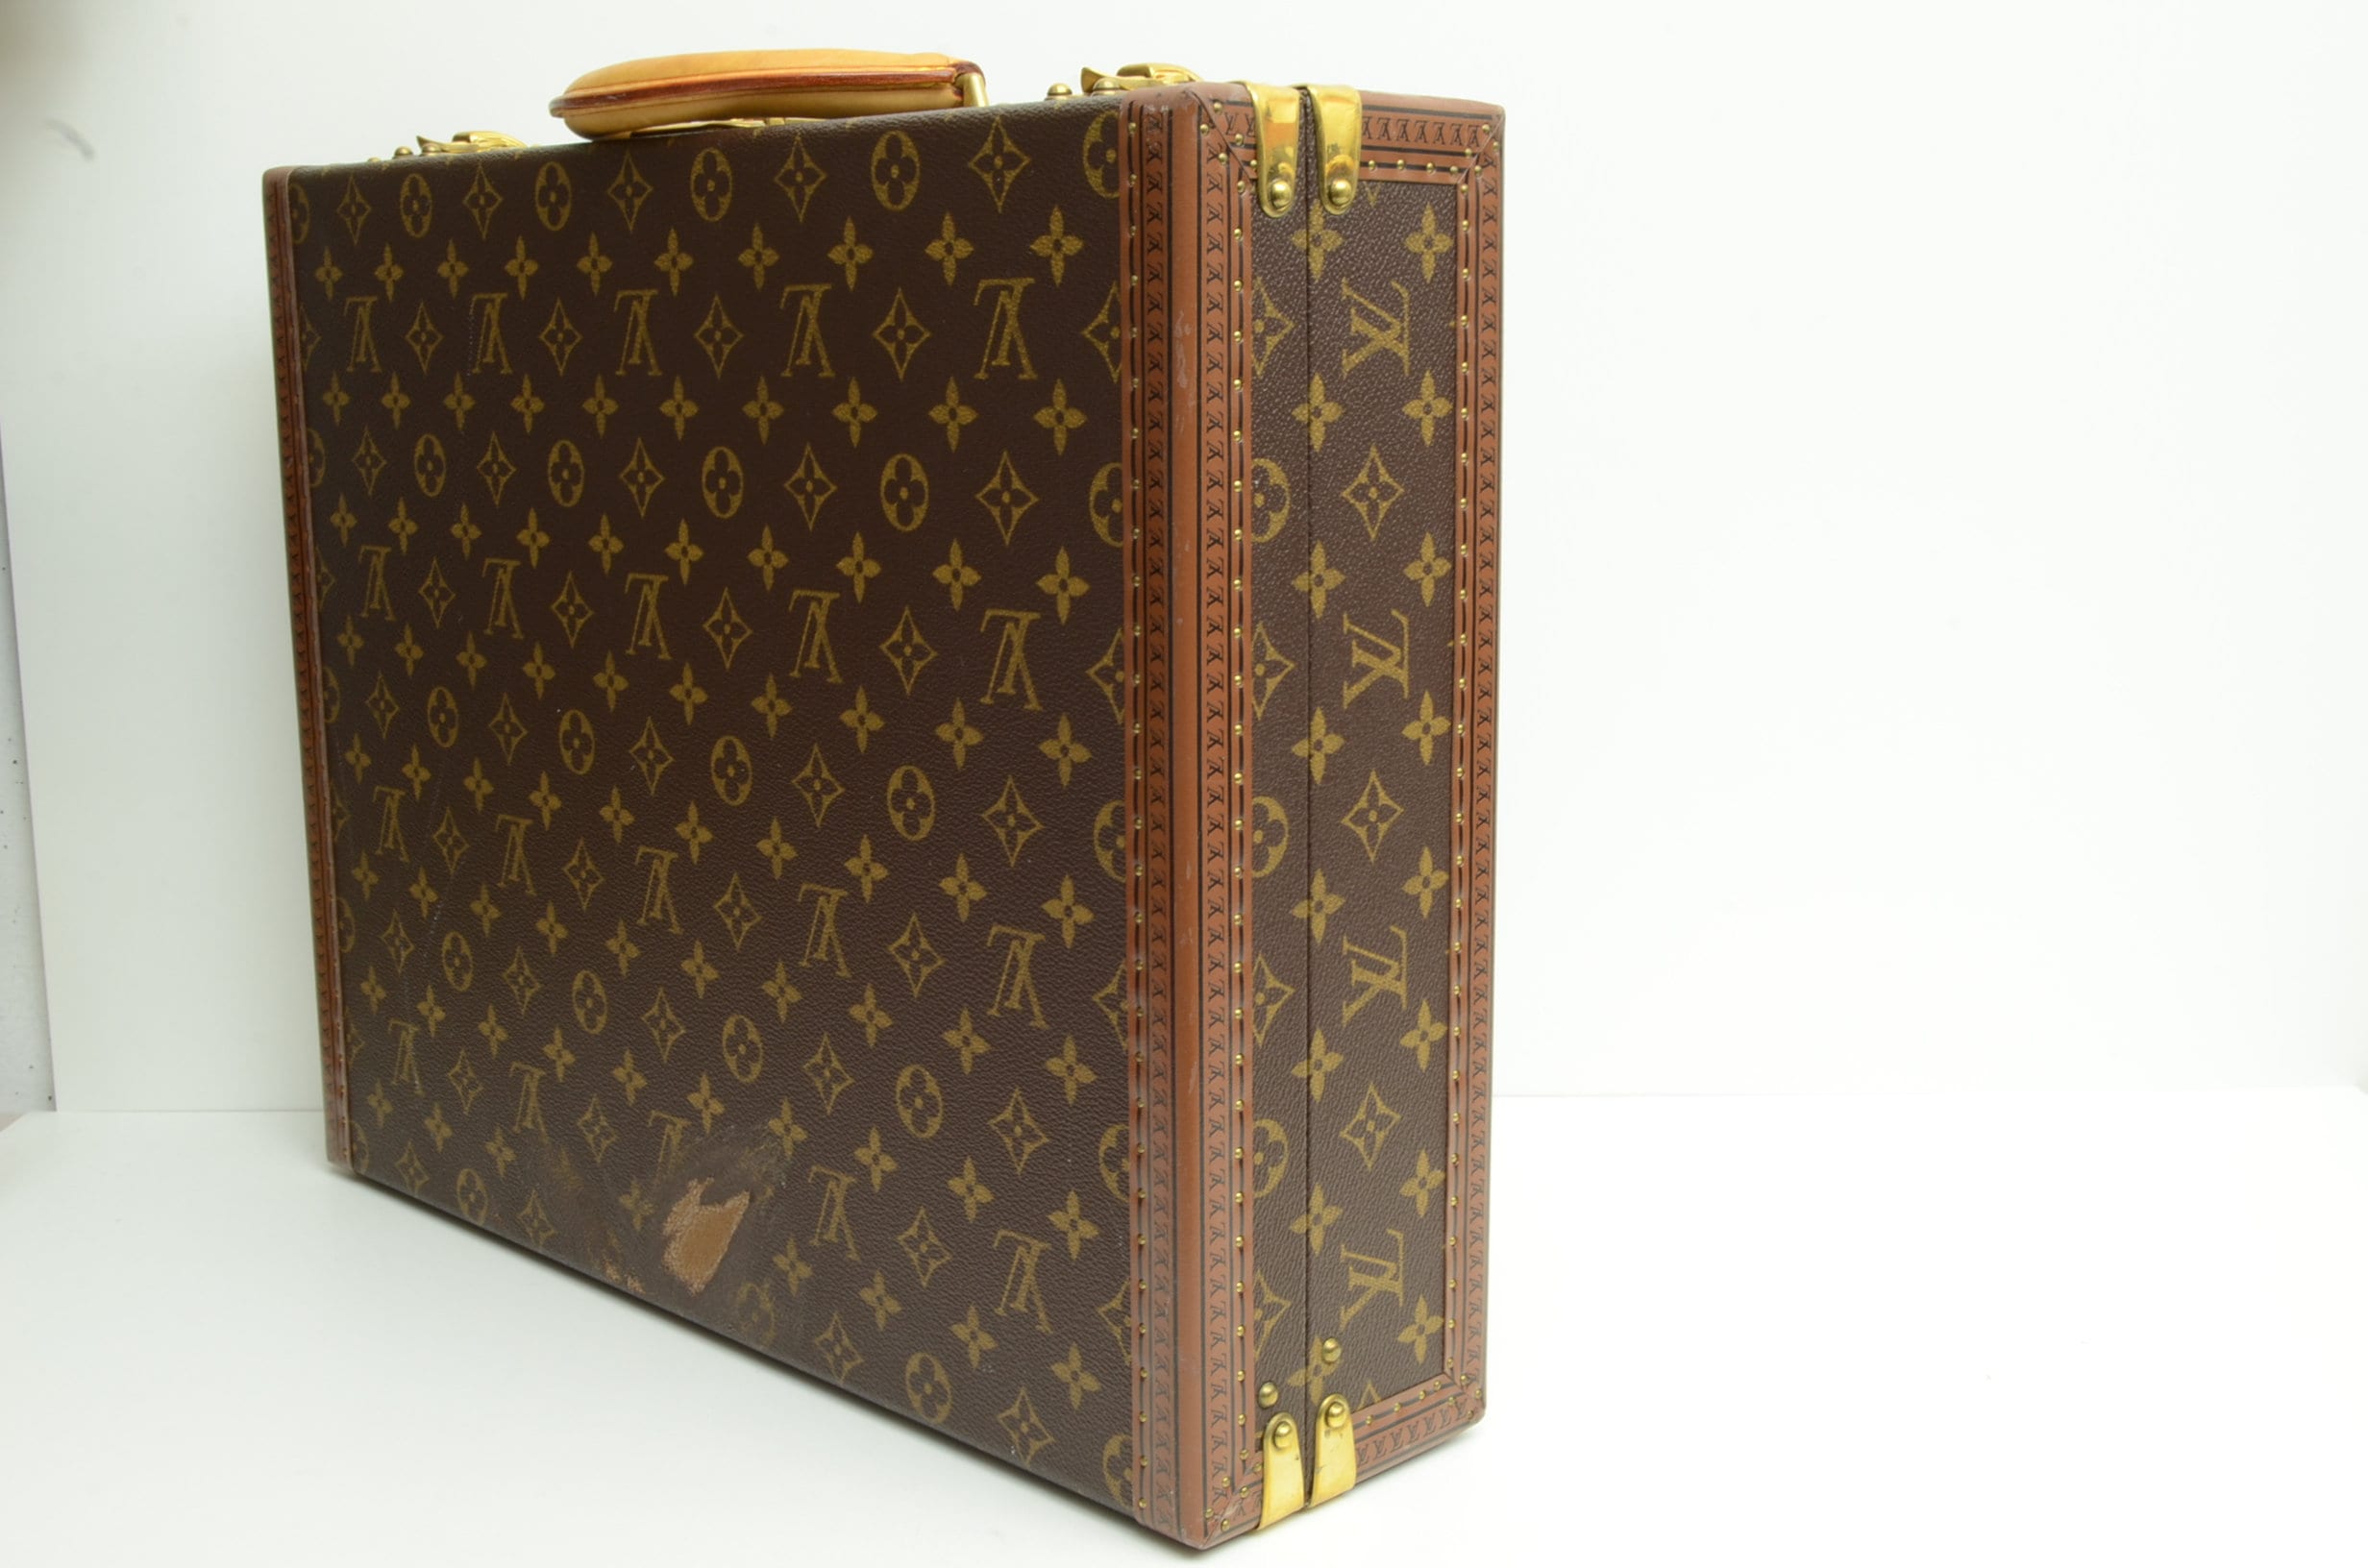 Authentic Louis Vuitton President Briefcase 1st Edition Vintage